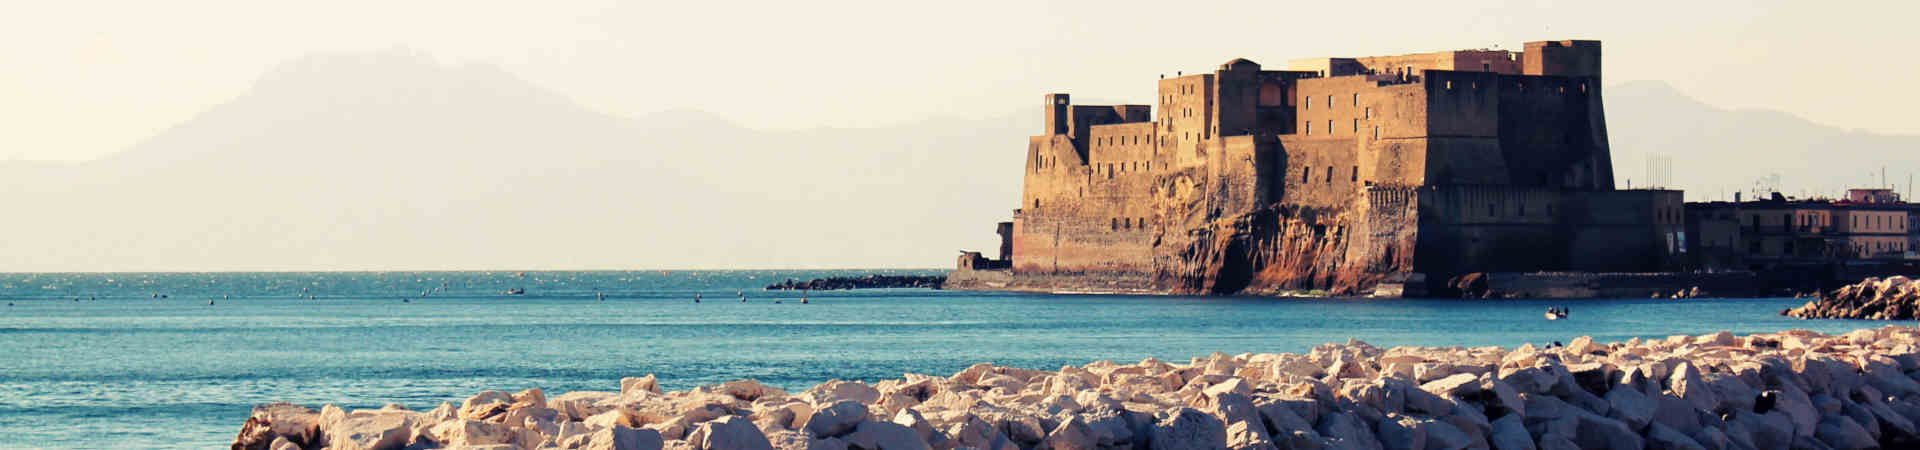 Image ressource du port de destination Naples pour l'itinéraire du ferry Palerme - Naples